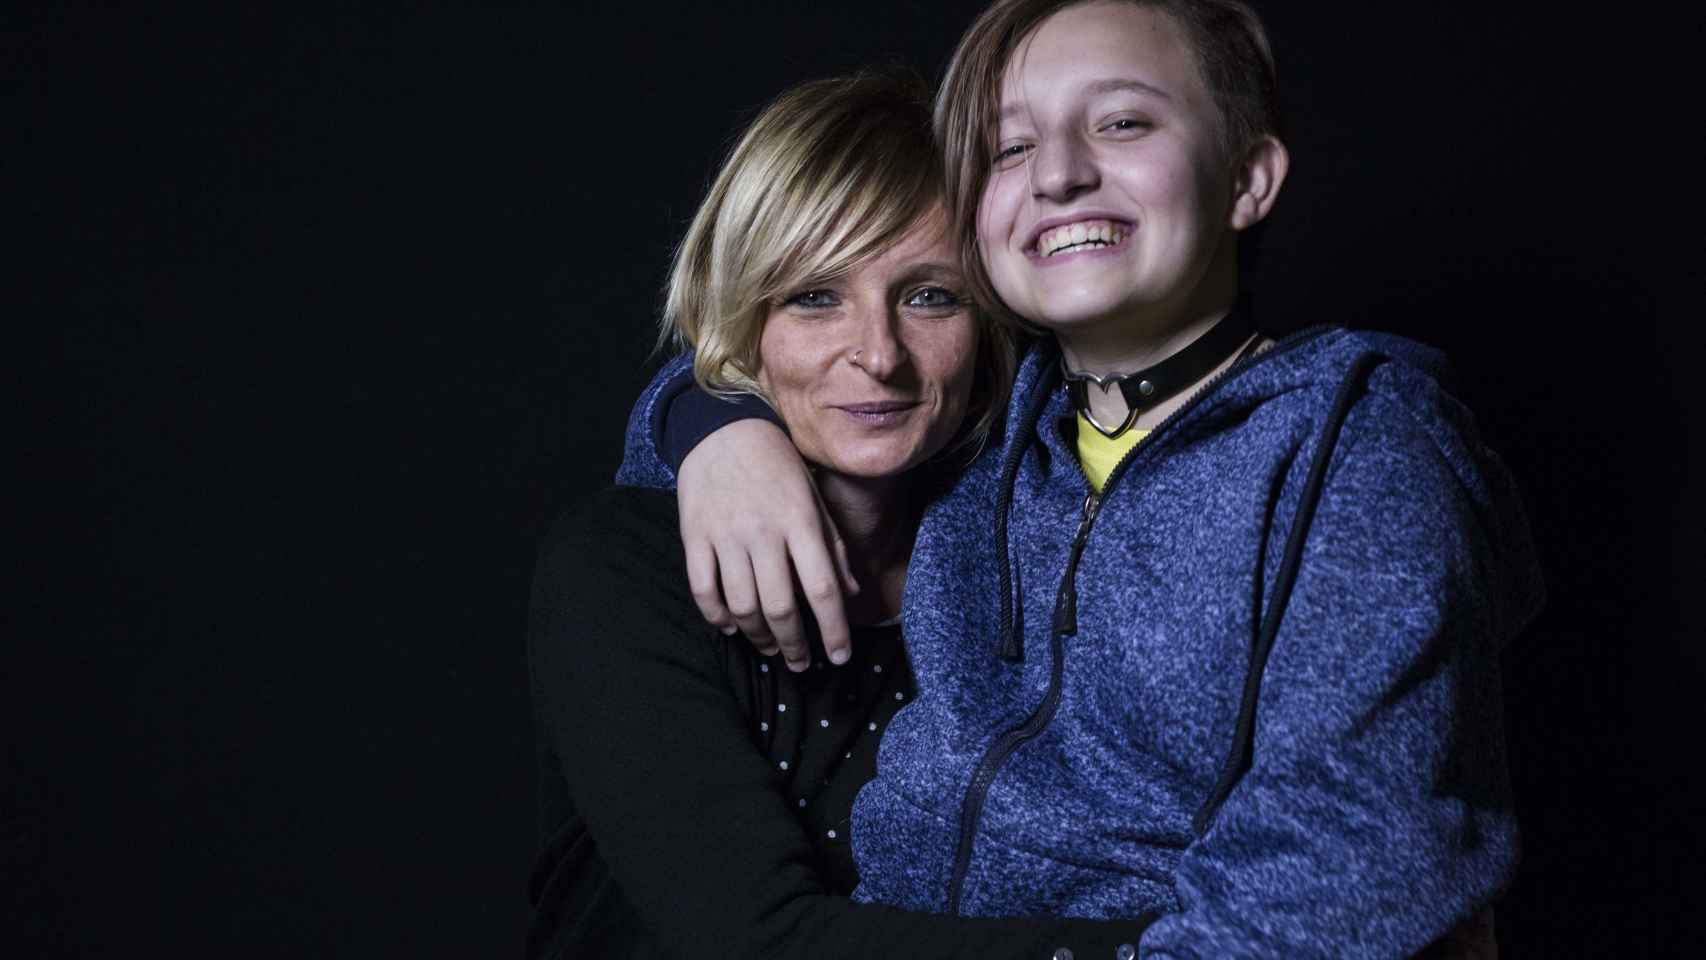 Álex, doce años, junto a su madre Carola. Sueña con ser programador de videojuegos.